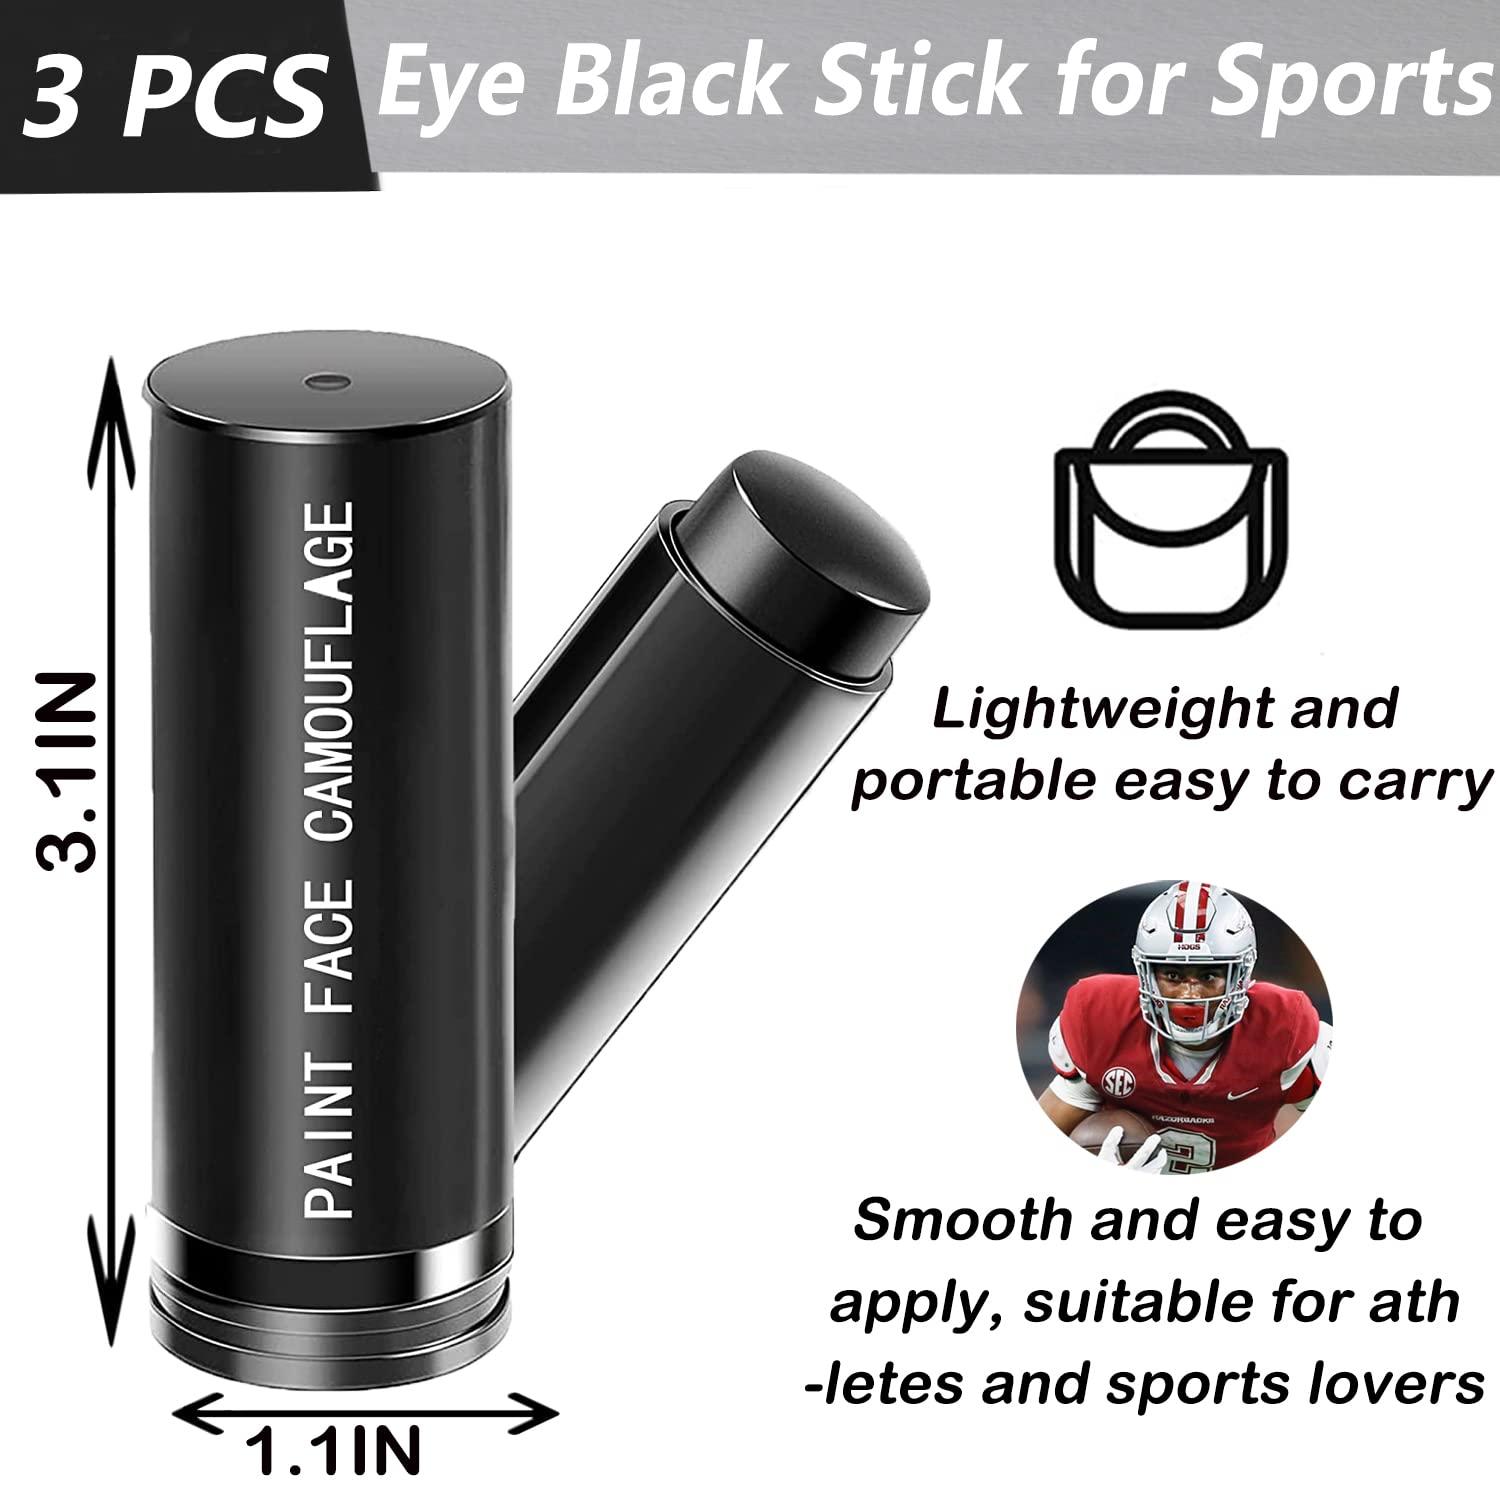 Eye Black Stick – Sports Basement